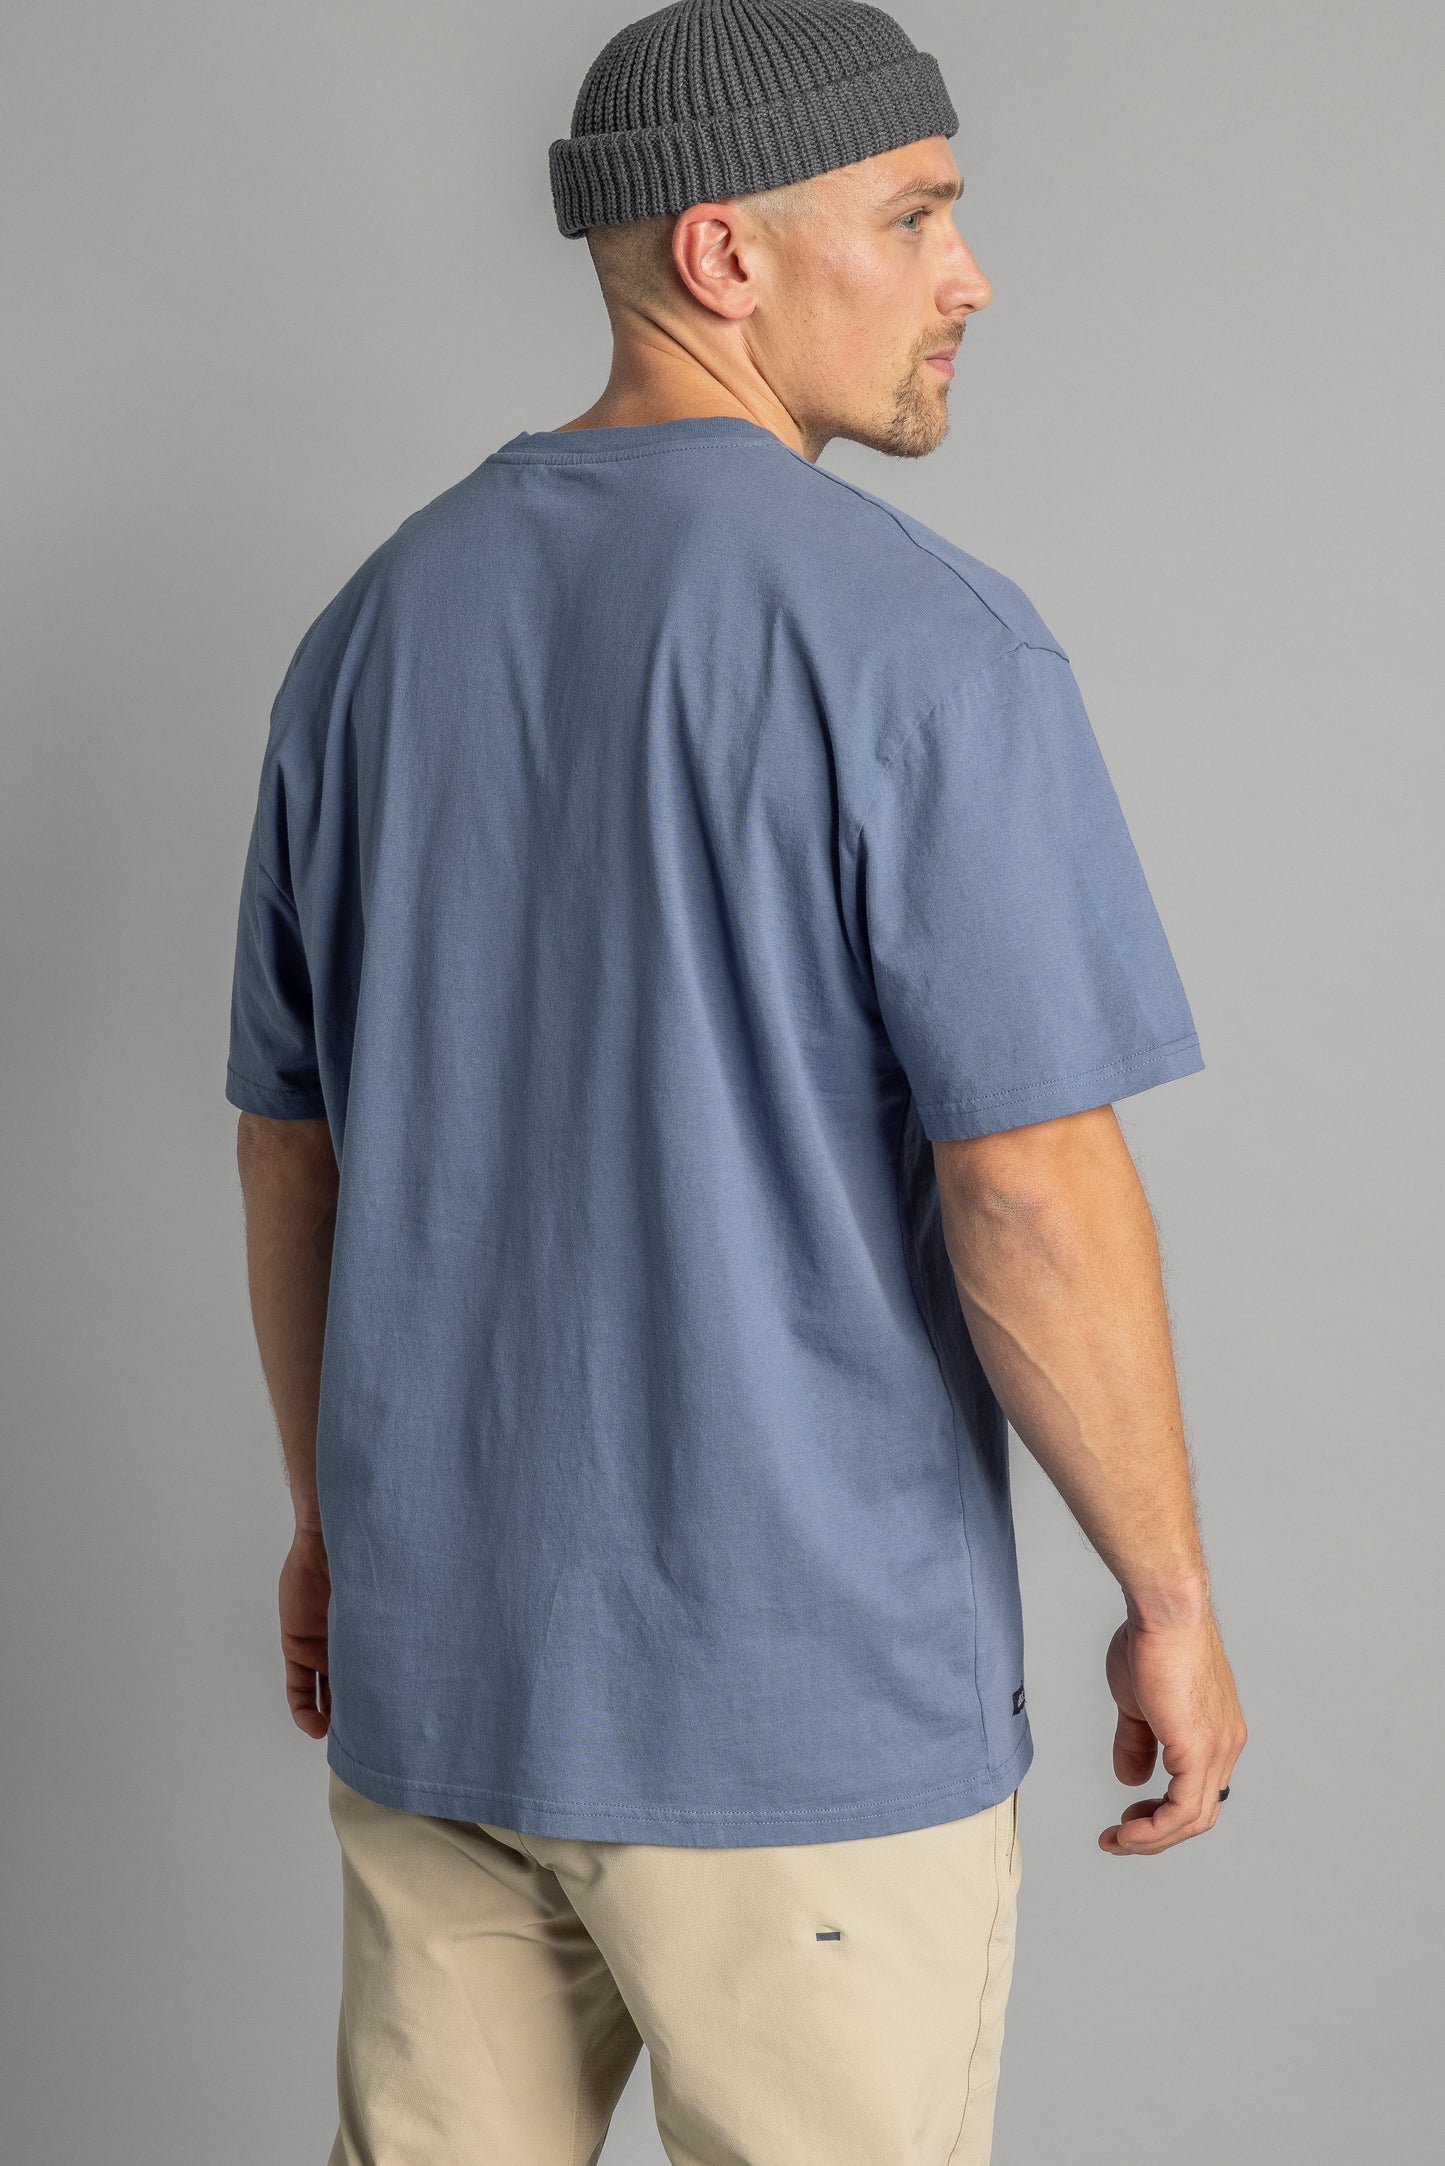 Recycled cotton T-shirt OVERSIZED, aquamarine